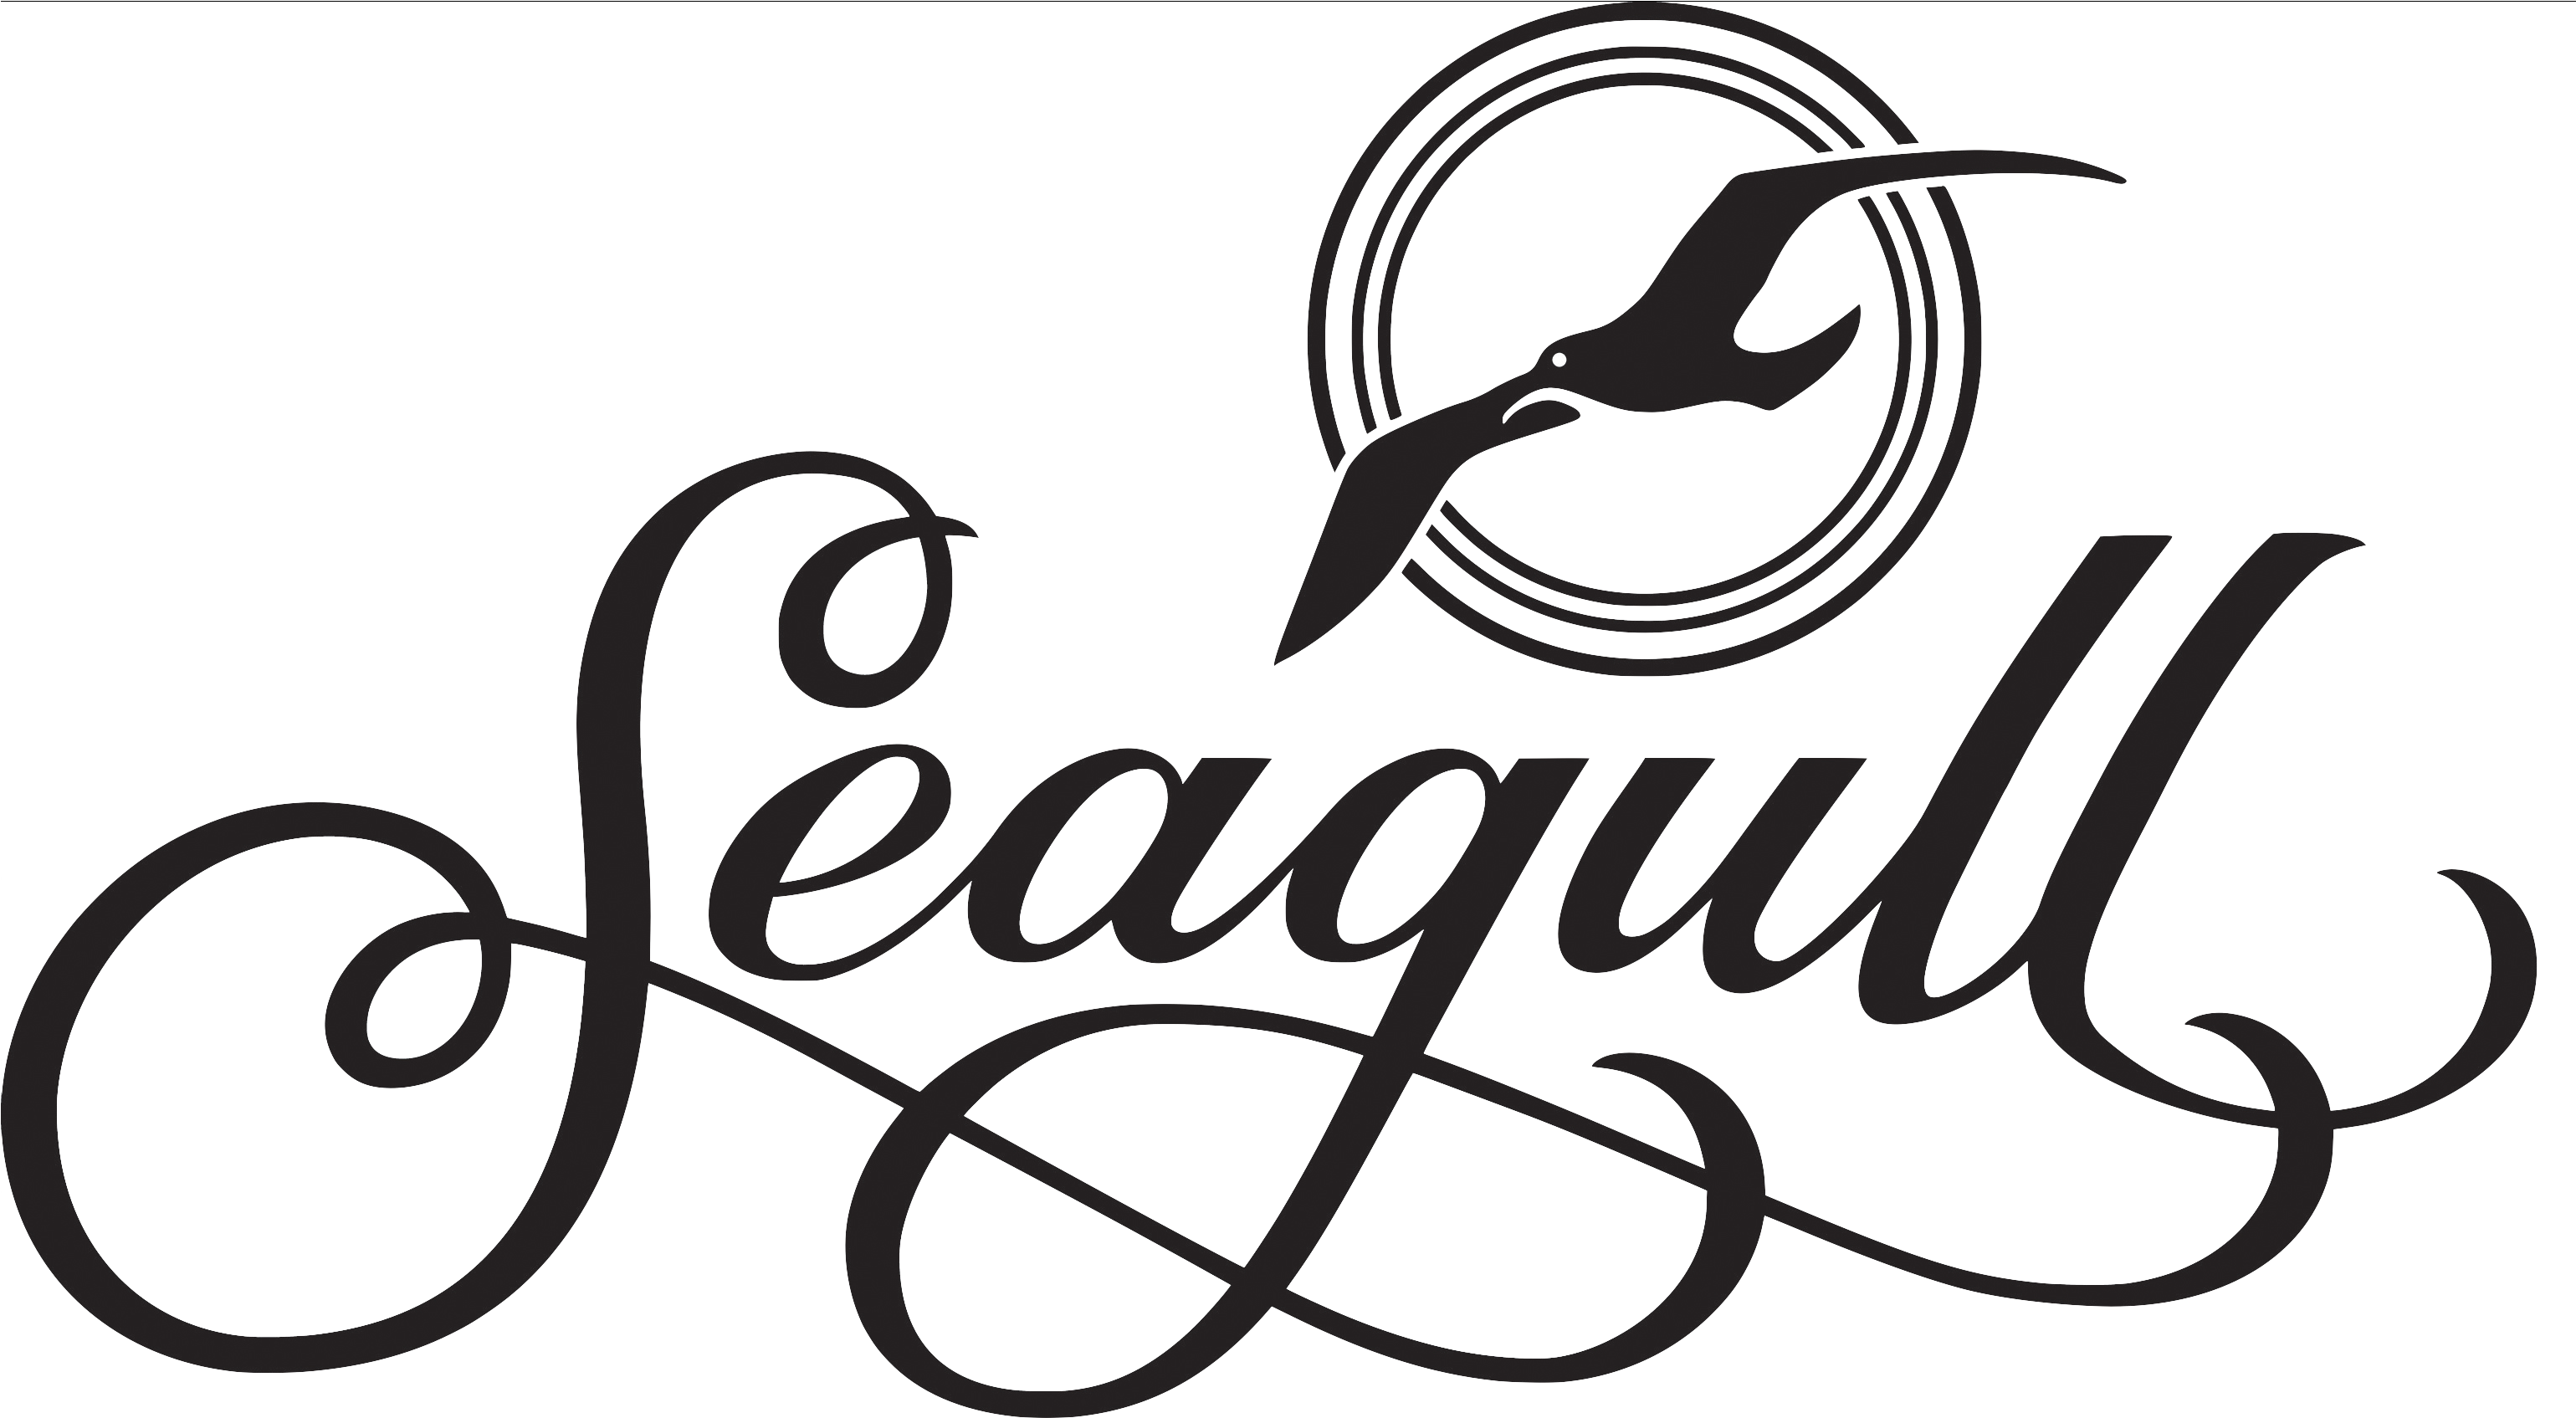 Seagull Coastline S6 Creme Brulee Sg Qi (3078x1787)